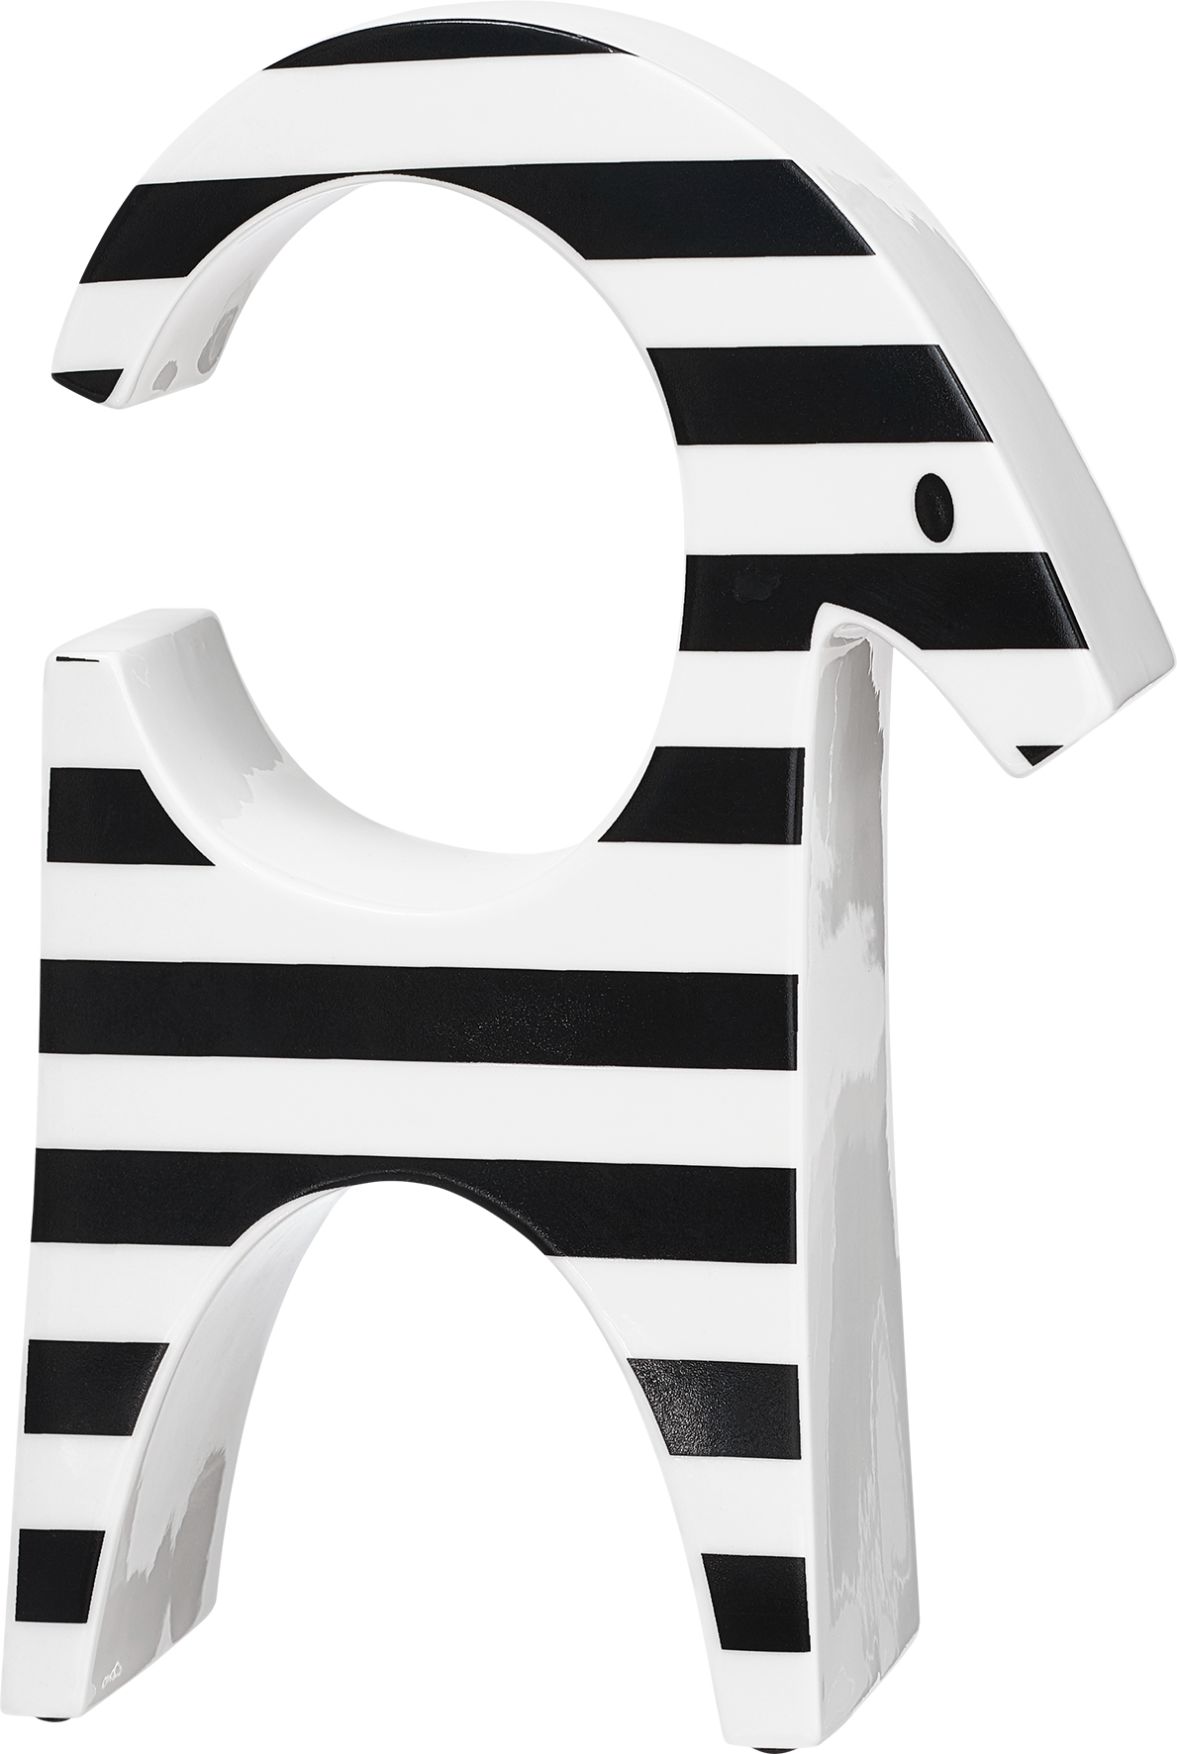 Polkabock i svart och vitt från Cult design höjd 17 cm i stengods